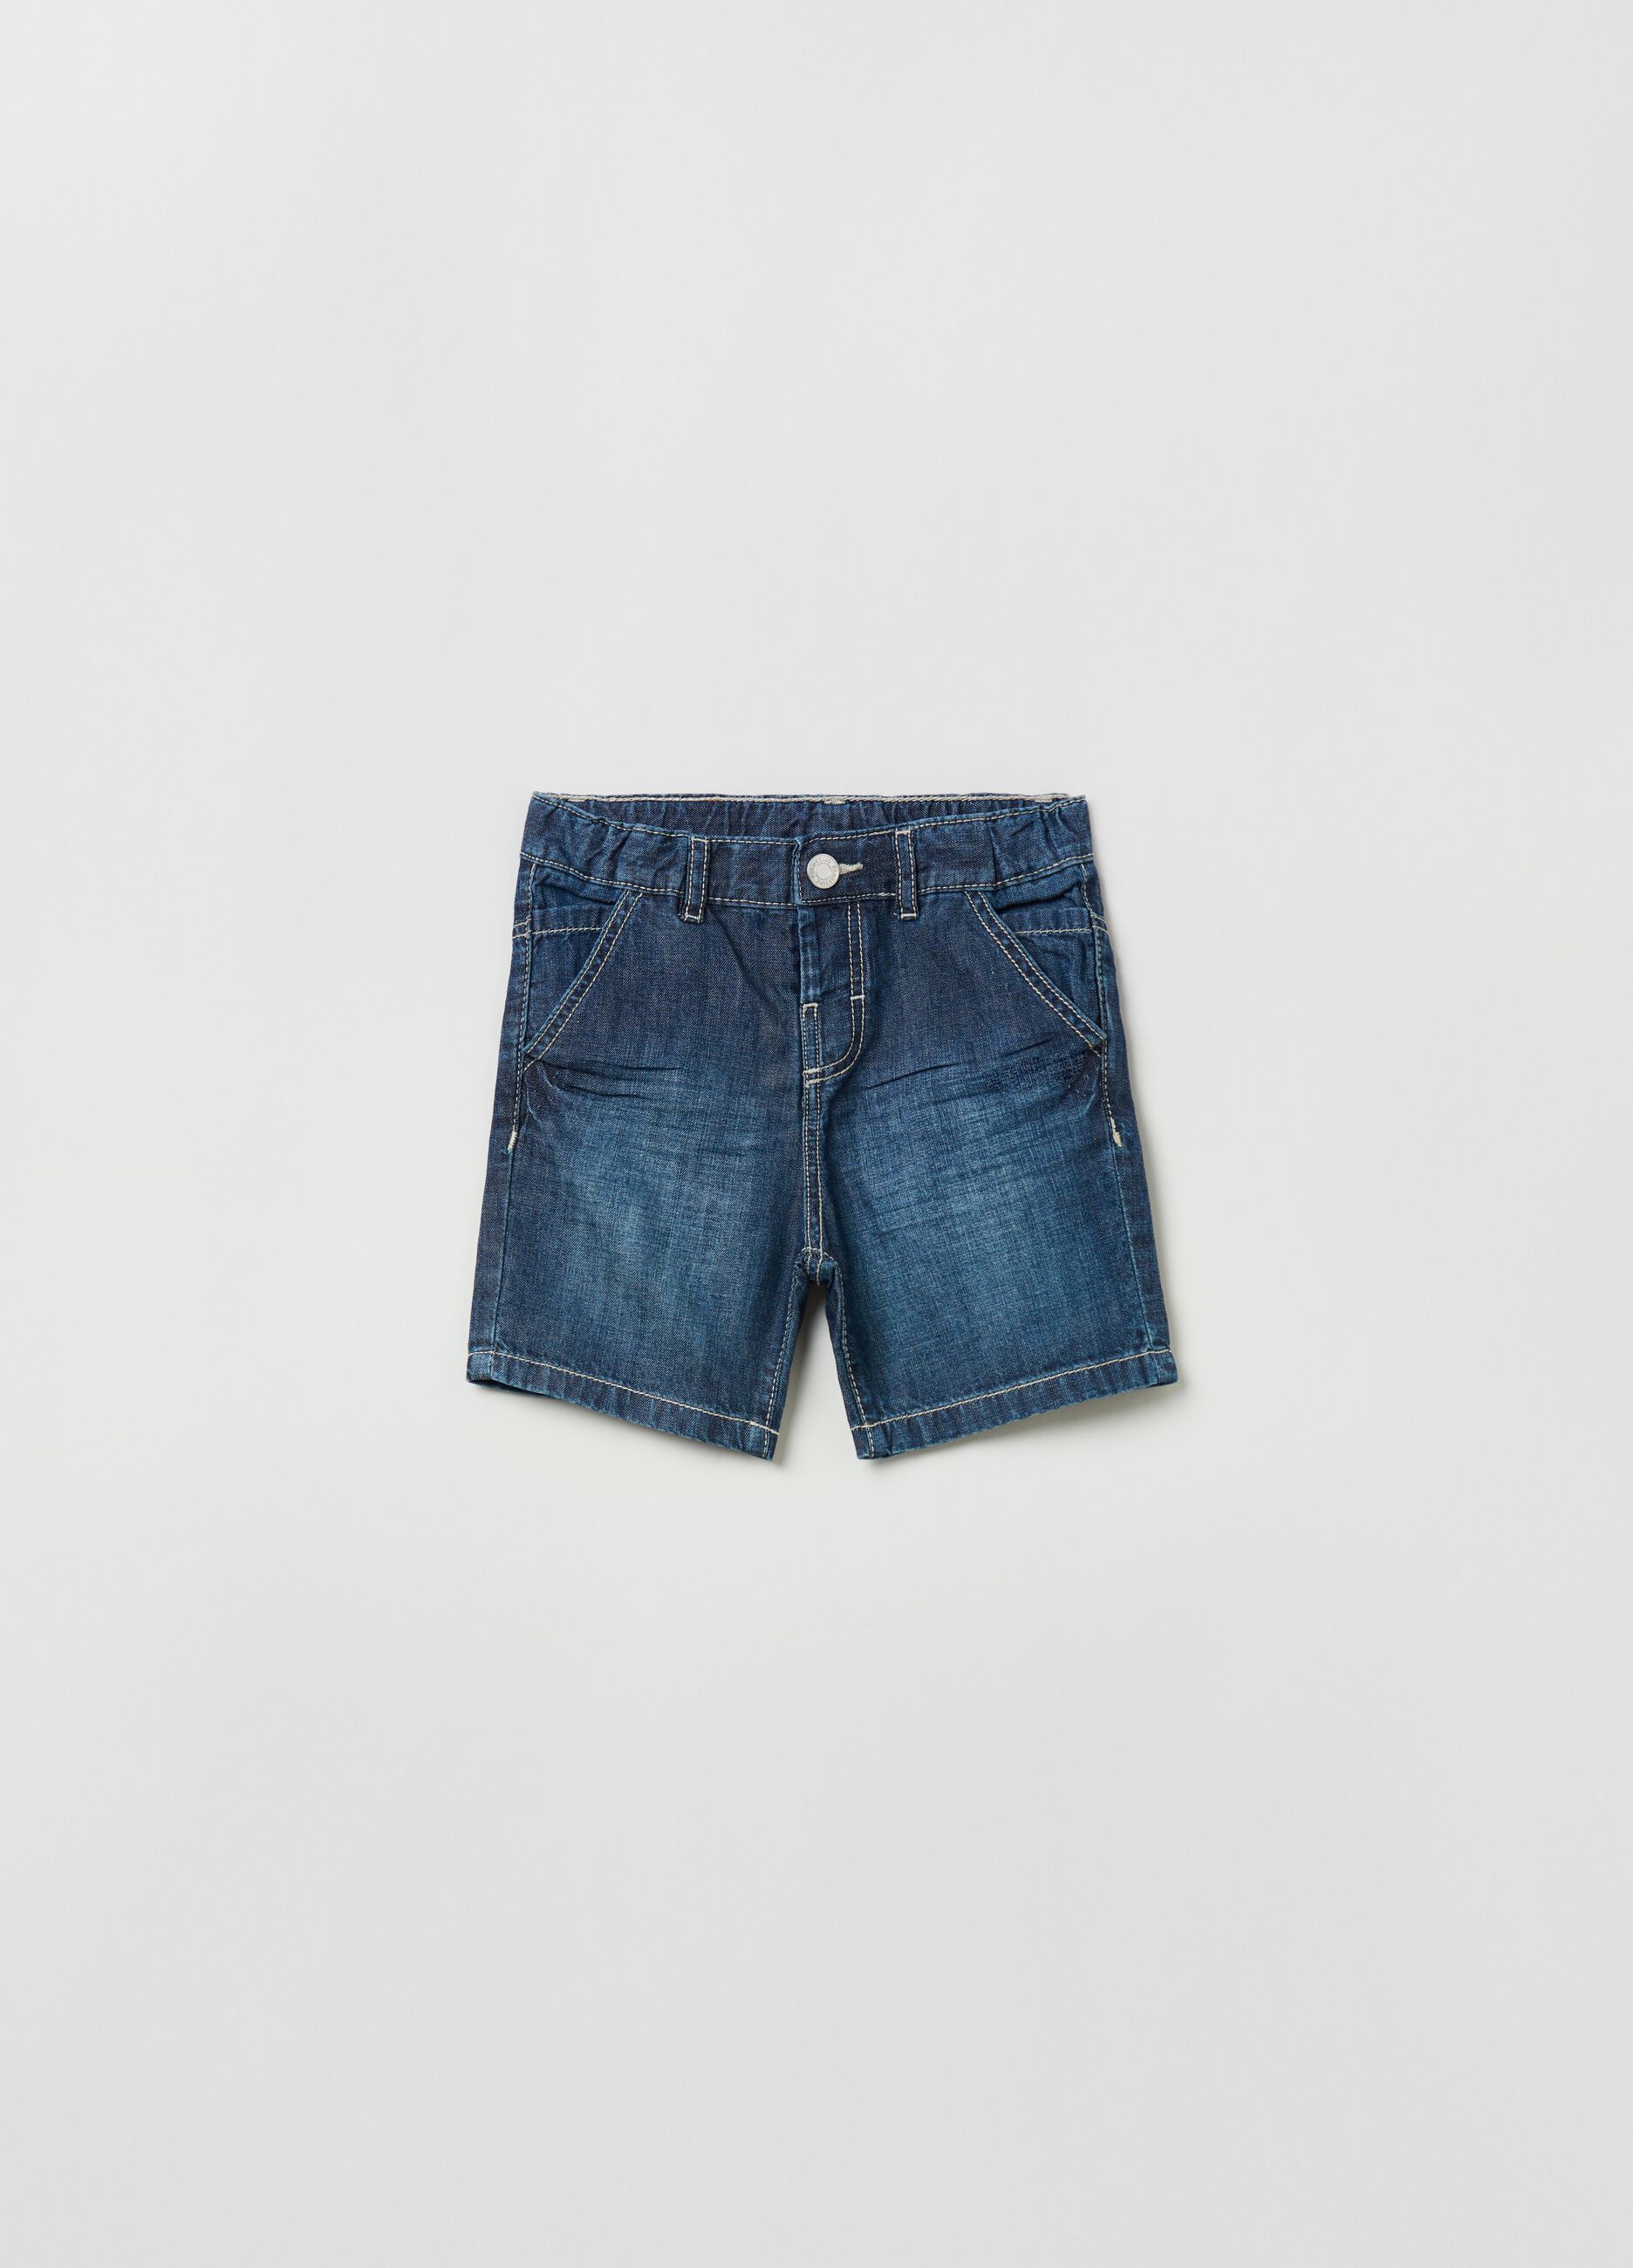 Stonewashed shorts in lightweight denim